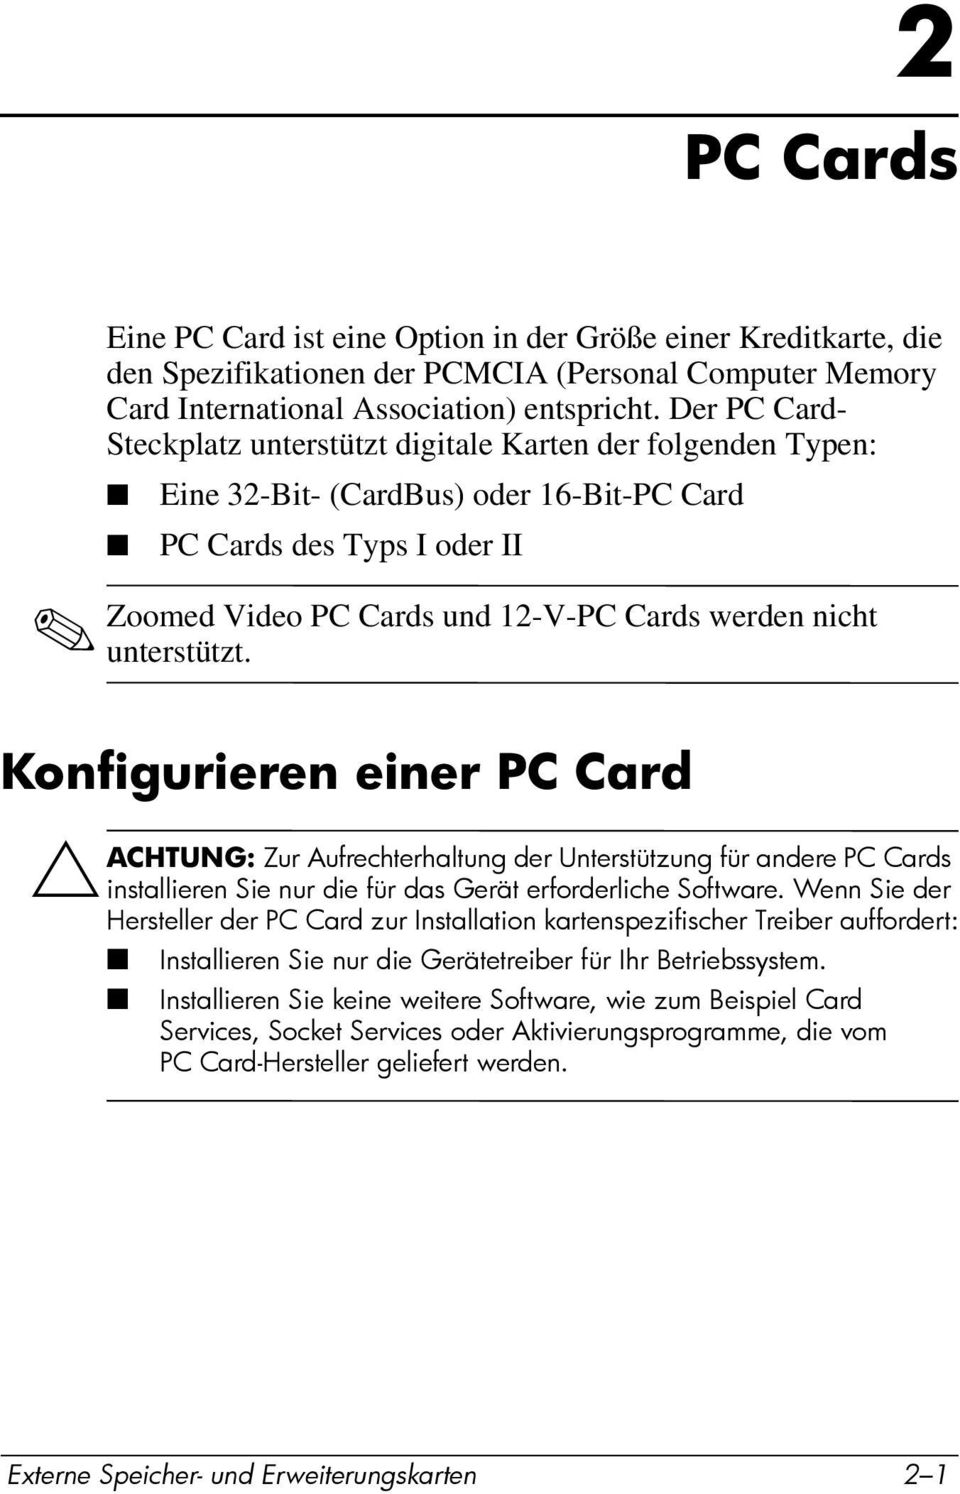 unterstützt. Konfigurieren einer PC Card ÄACHTUNG: Zur Aufrechterhaltung der Unterstützung für andere PC Cards installieren Sie nur die für das Gerät erforderliche Software.